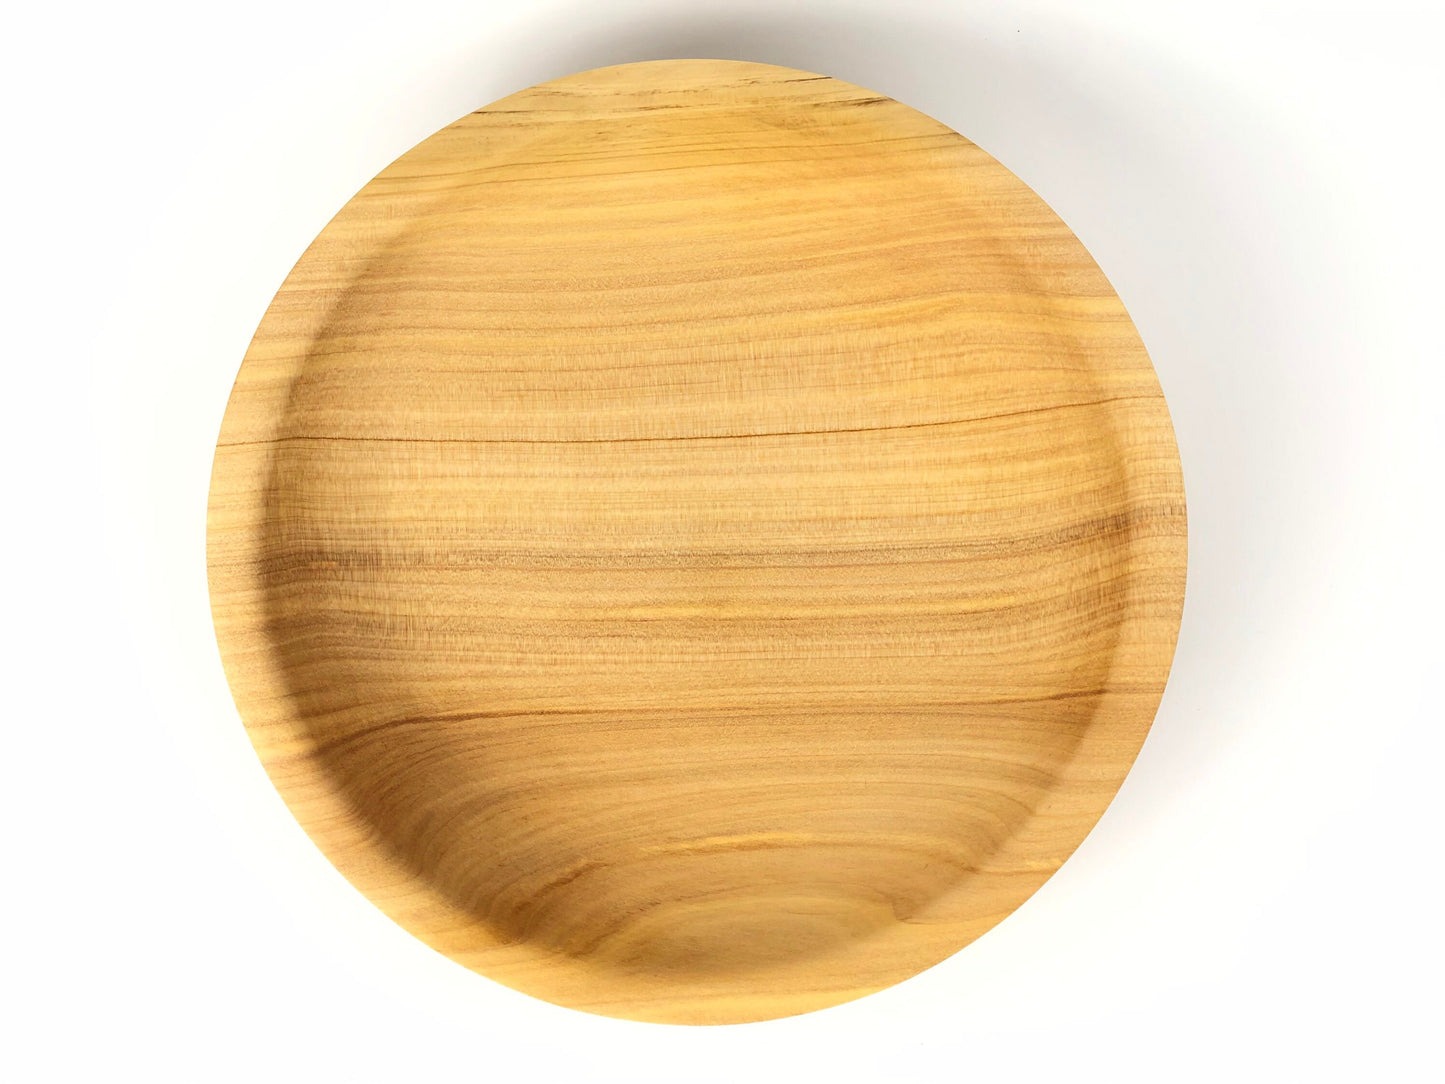 Cornish Macrocarpa no. 8 bowl